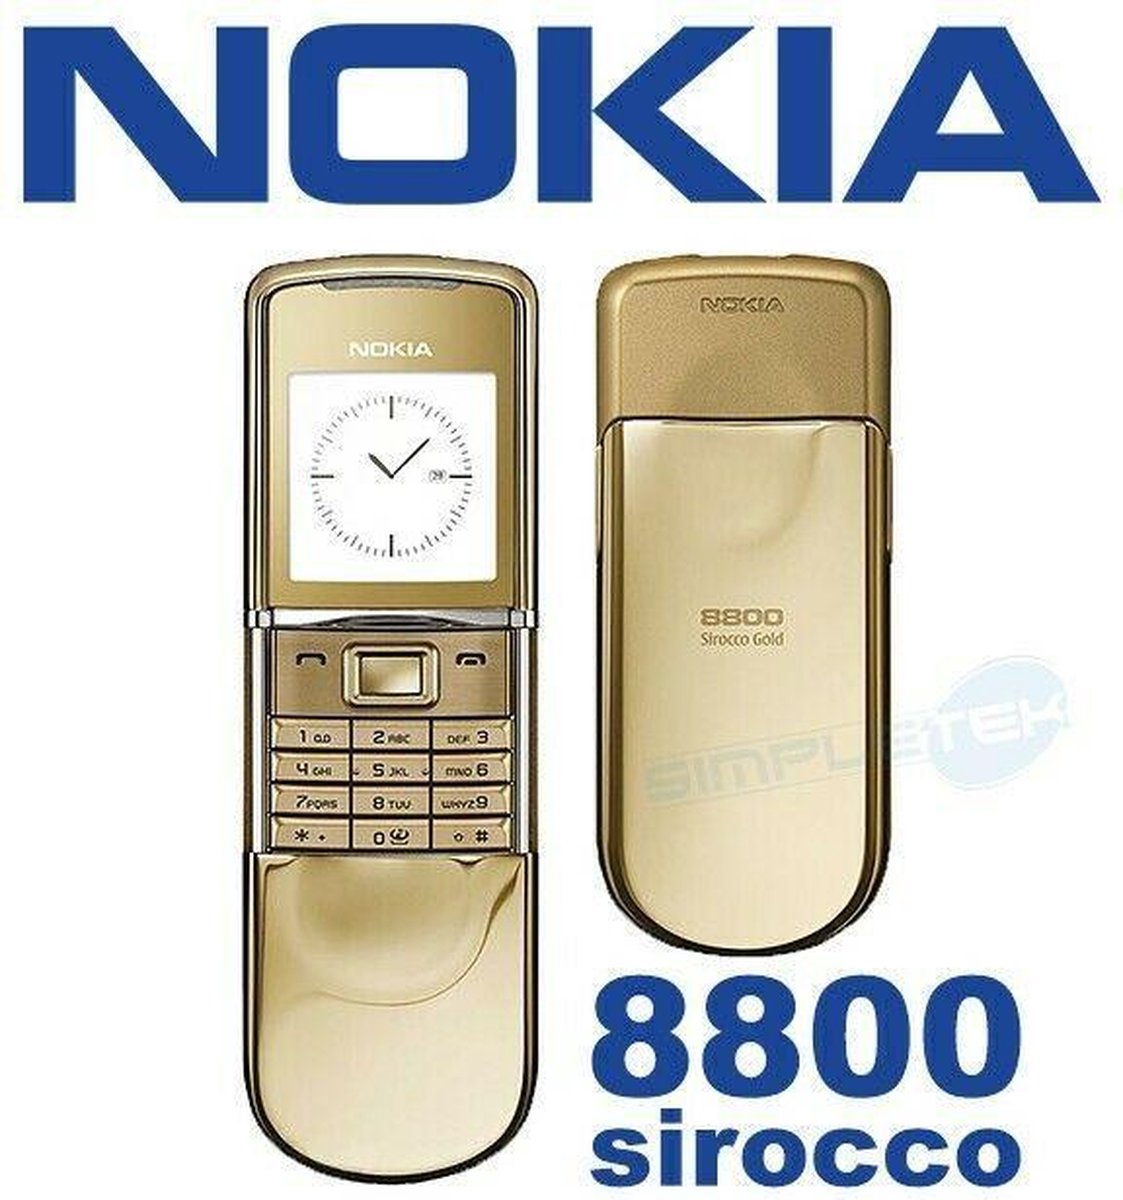 大勧め Nokia 8800 Sirocco Gold - スマートフォン/携帯電話